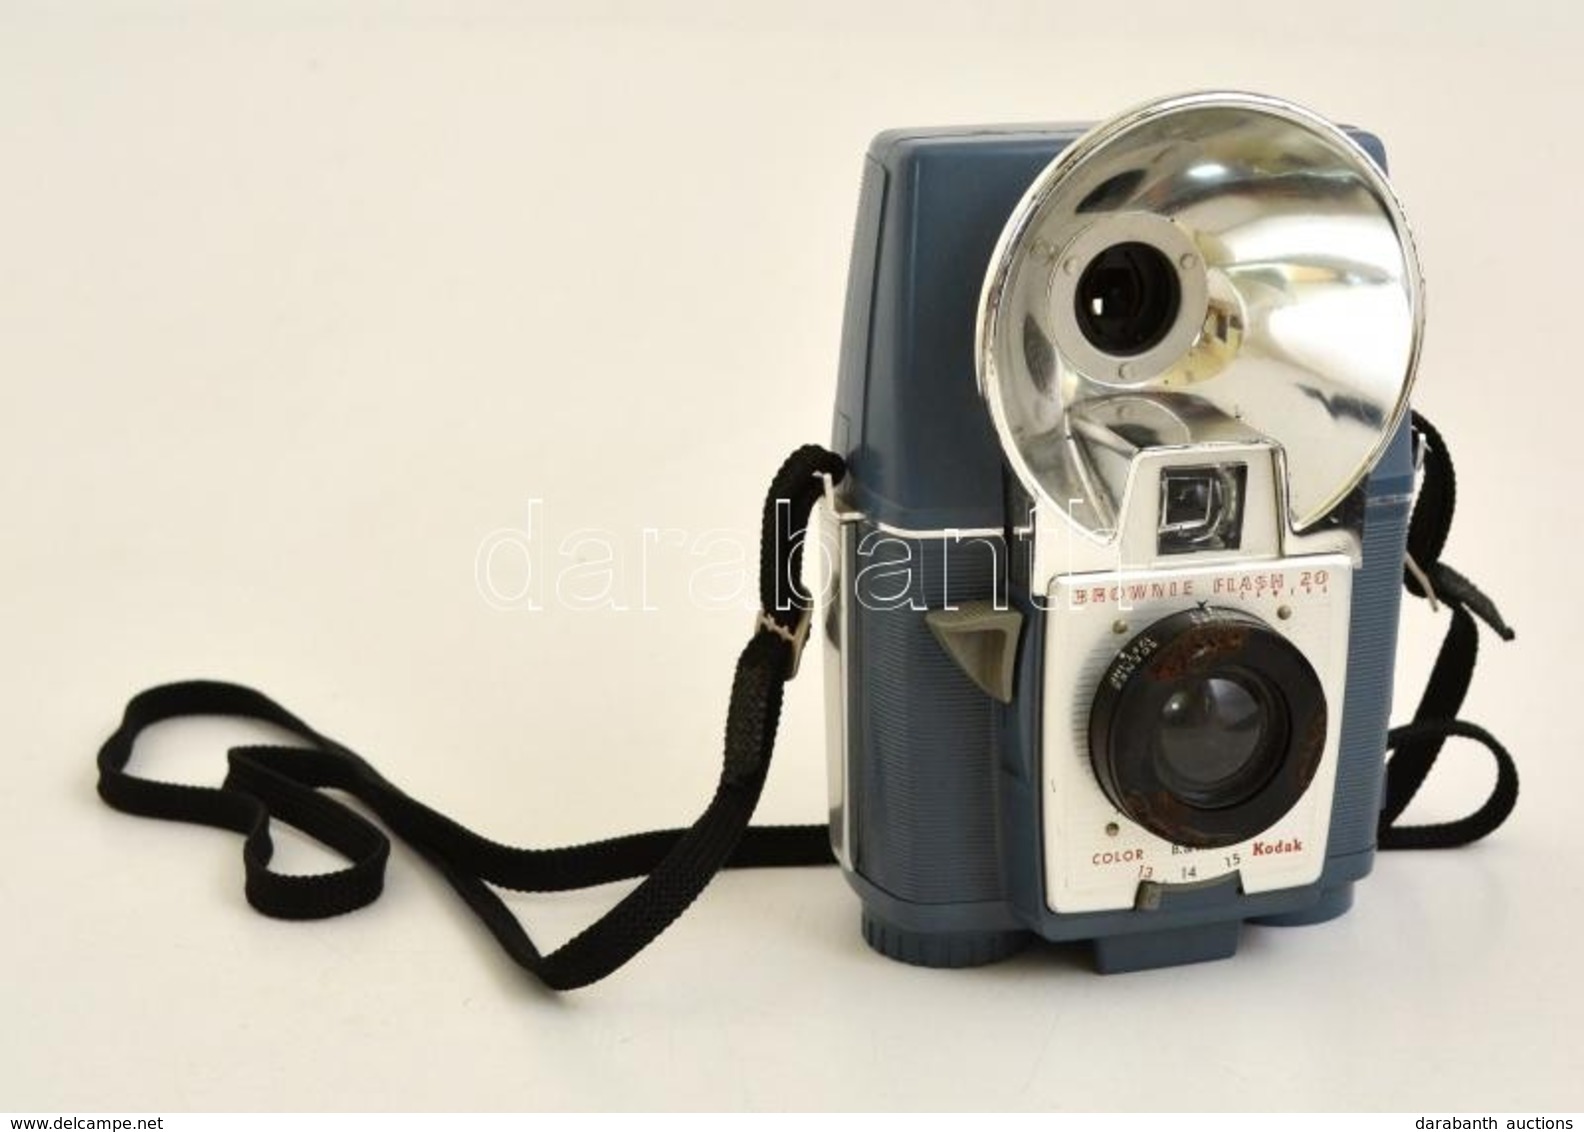 Kodak Brownie Flash 20 Box Fényképezőgép, Működőképes állapotban / Vintage Kodak Box Camera, In Working Condition - Macchine Fotografiche